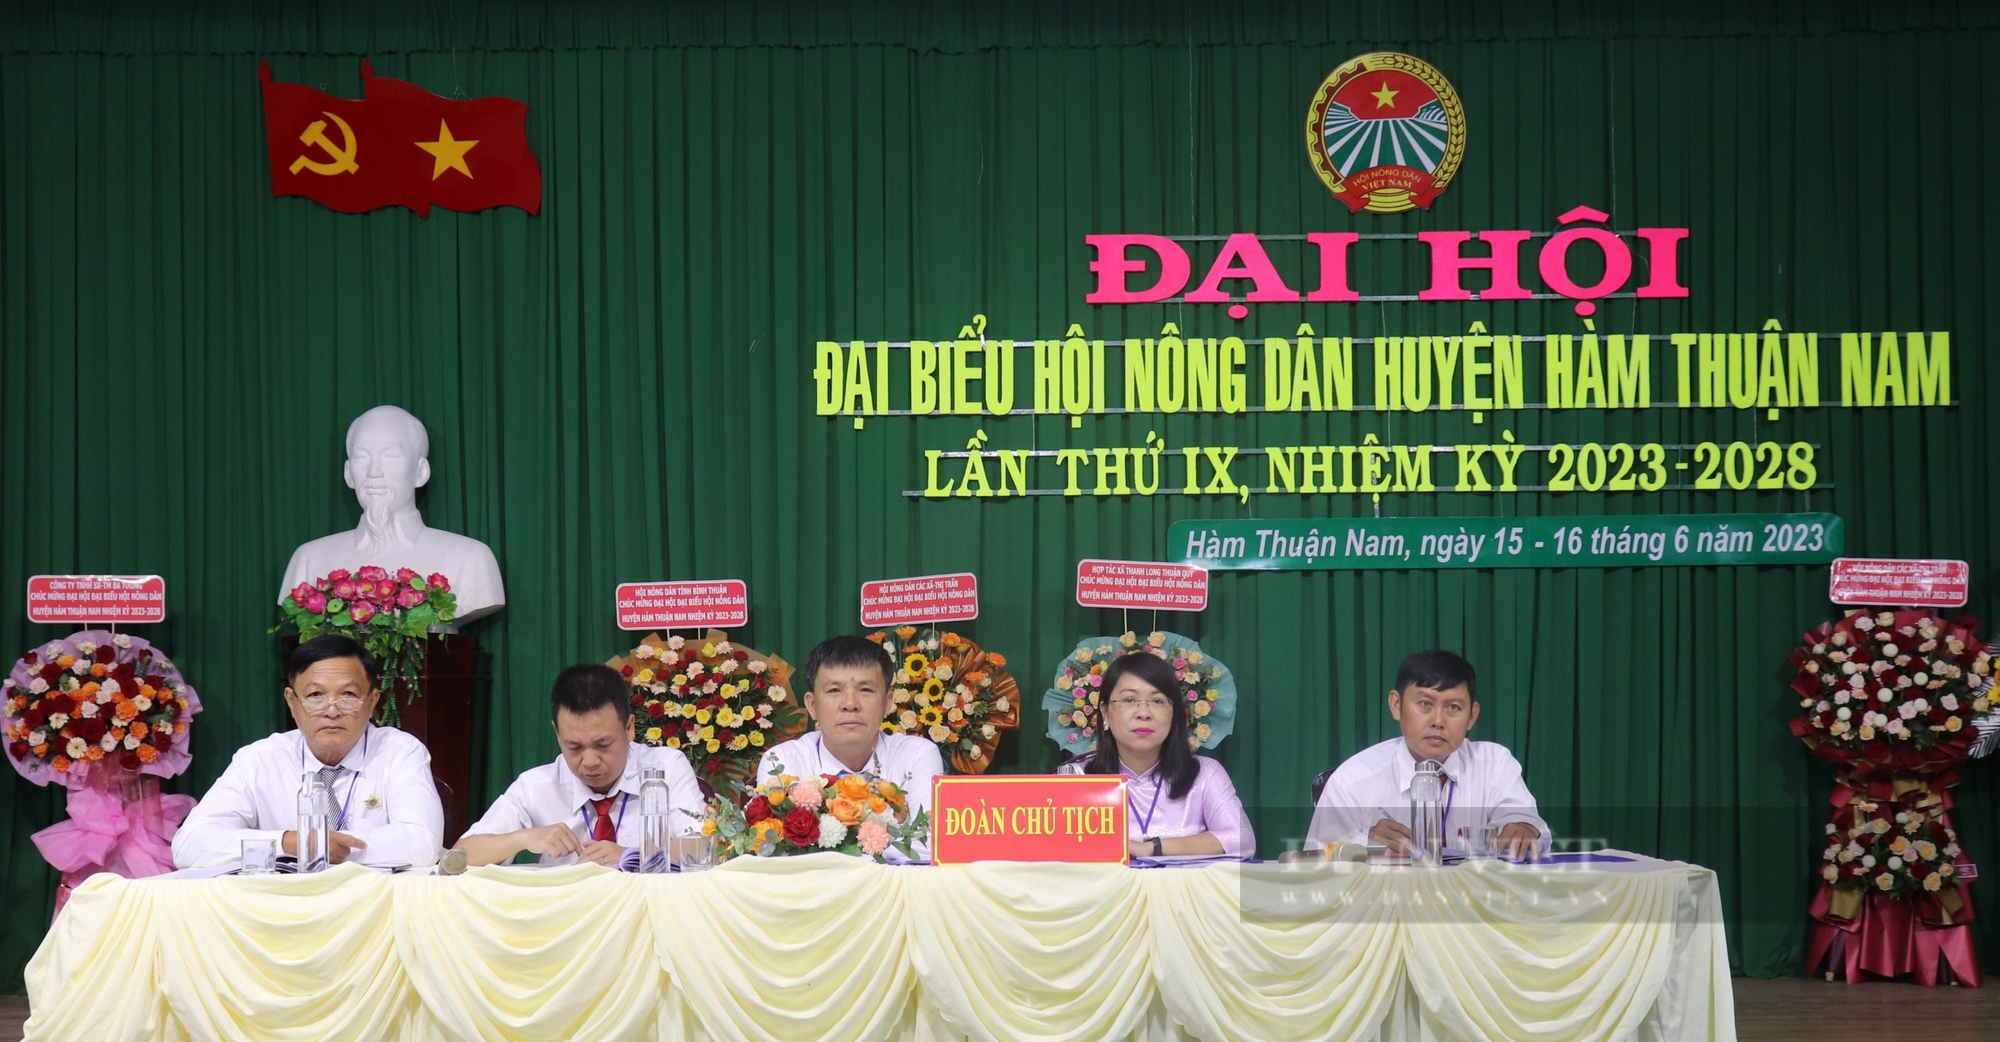 Bình Thuận: Ông Trần Xuân Thủ tái đắc cử chức Chủ tịch Hội Nông dân huyện Hàm Thuận Nam - Ảnh 2.